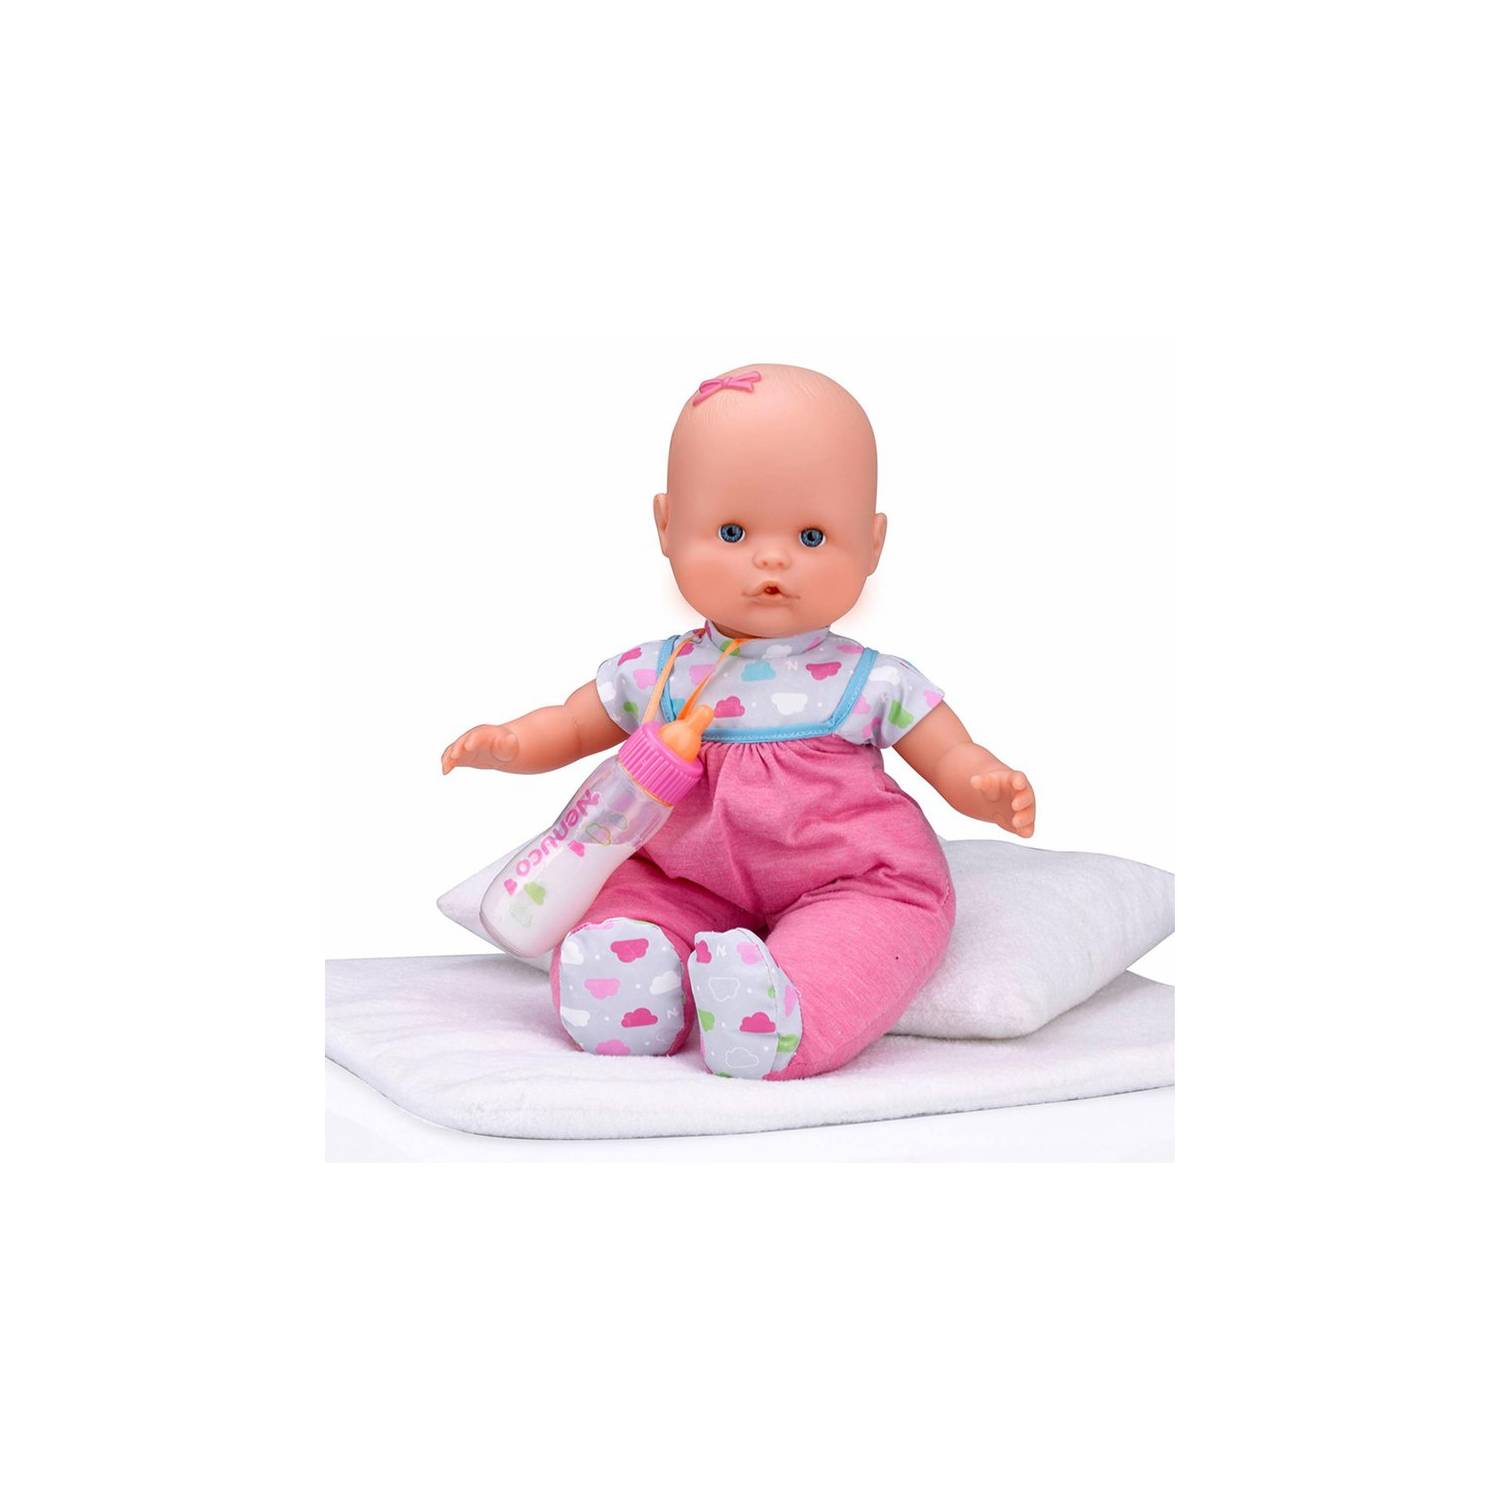  Nenuco - Biberón Mágico Rosa, Muñeco Bebé, para niños y